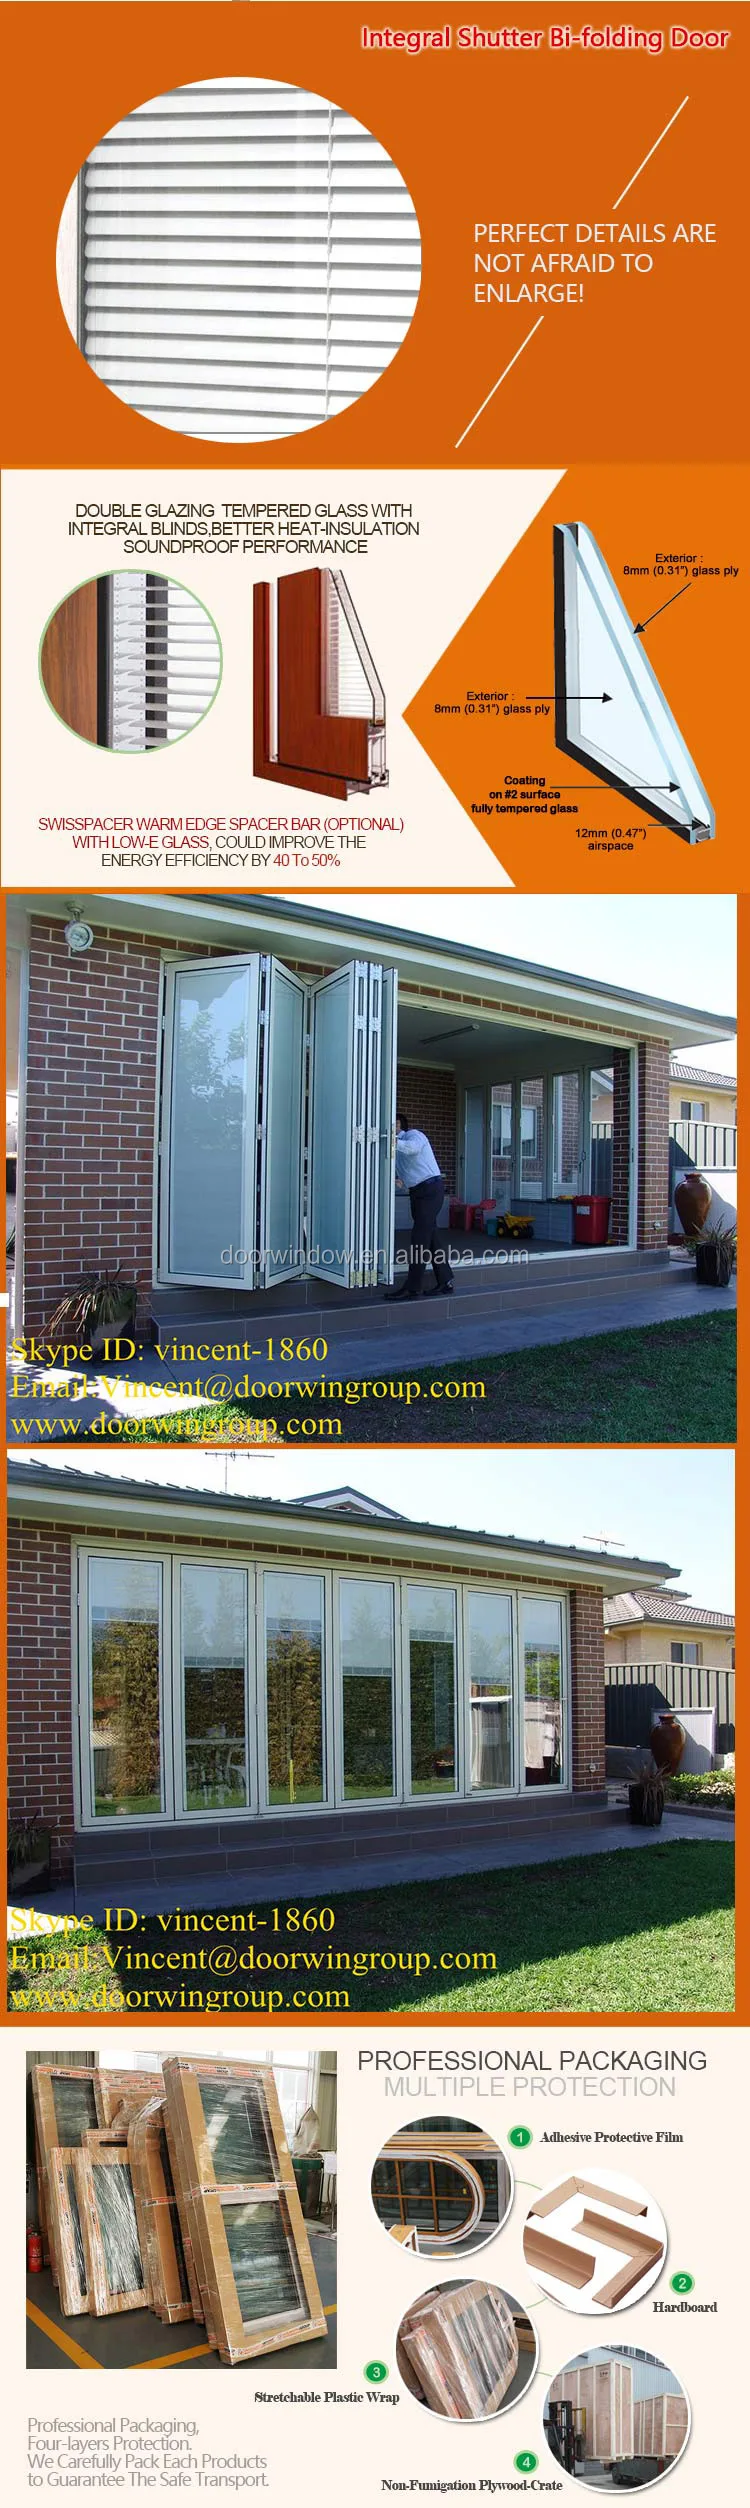 Australia standard exterior aluminium bi-folding doors aluminum wood folding patio bi fold